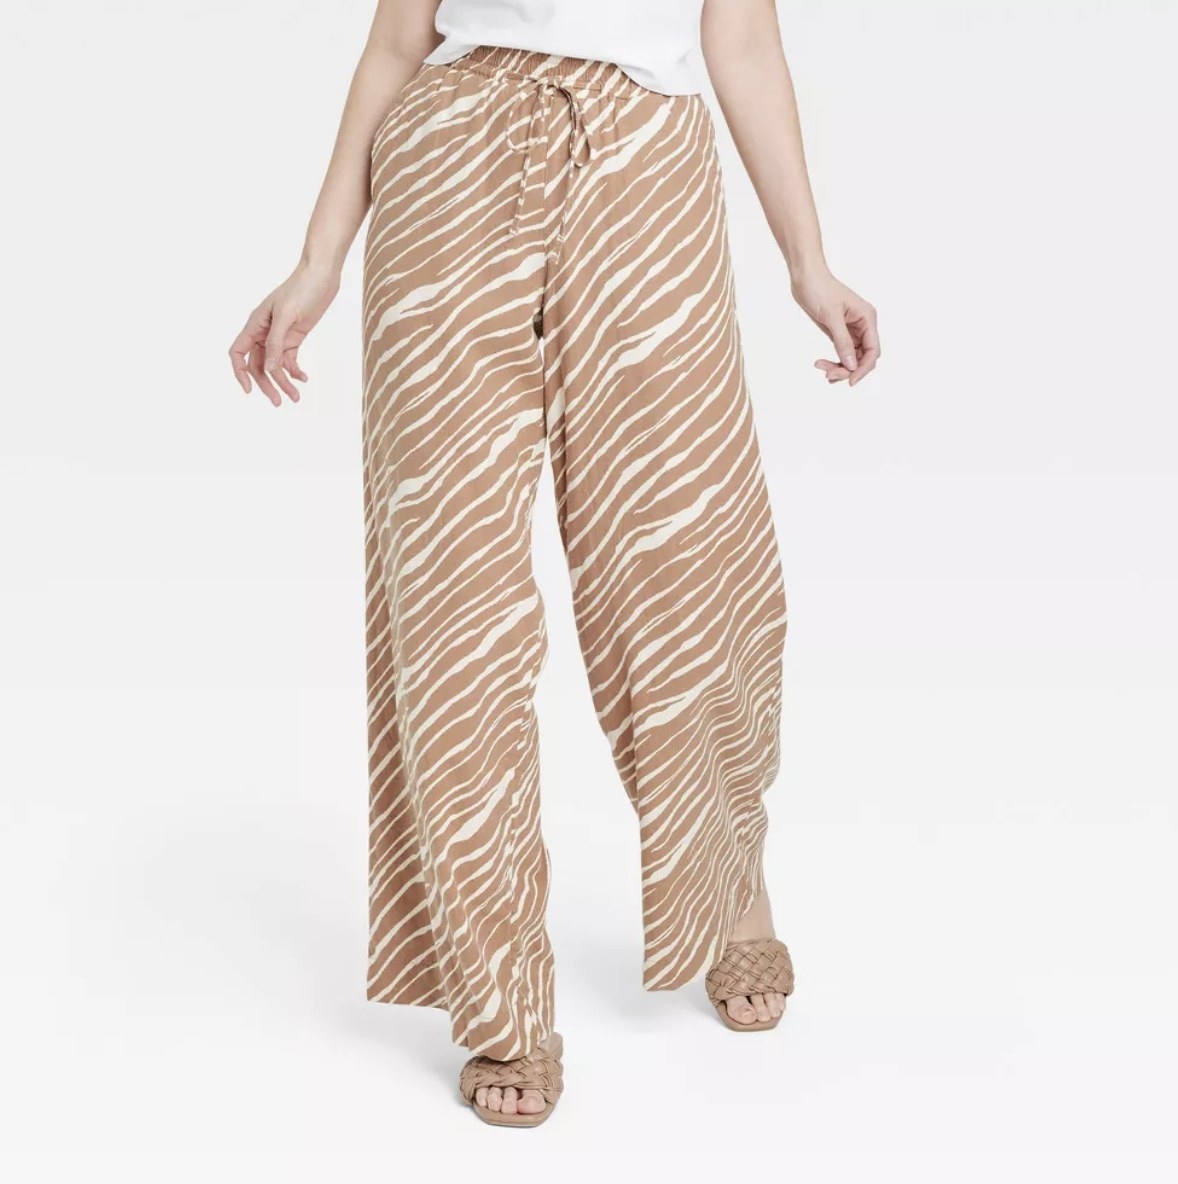 A pair of tan zebra print wide leg pants